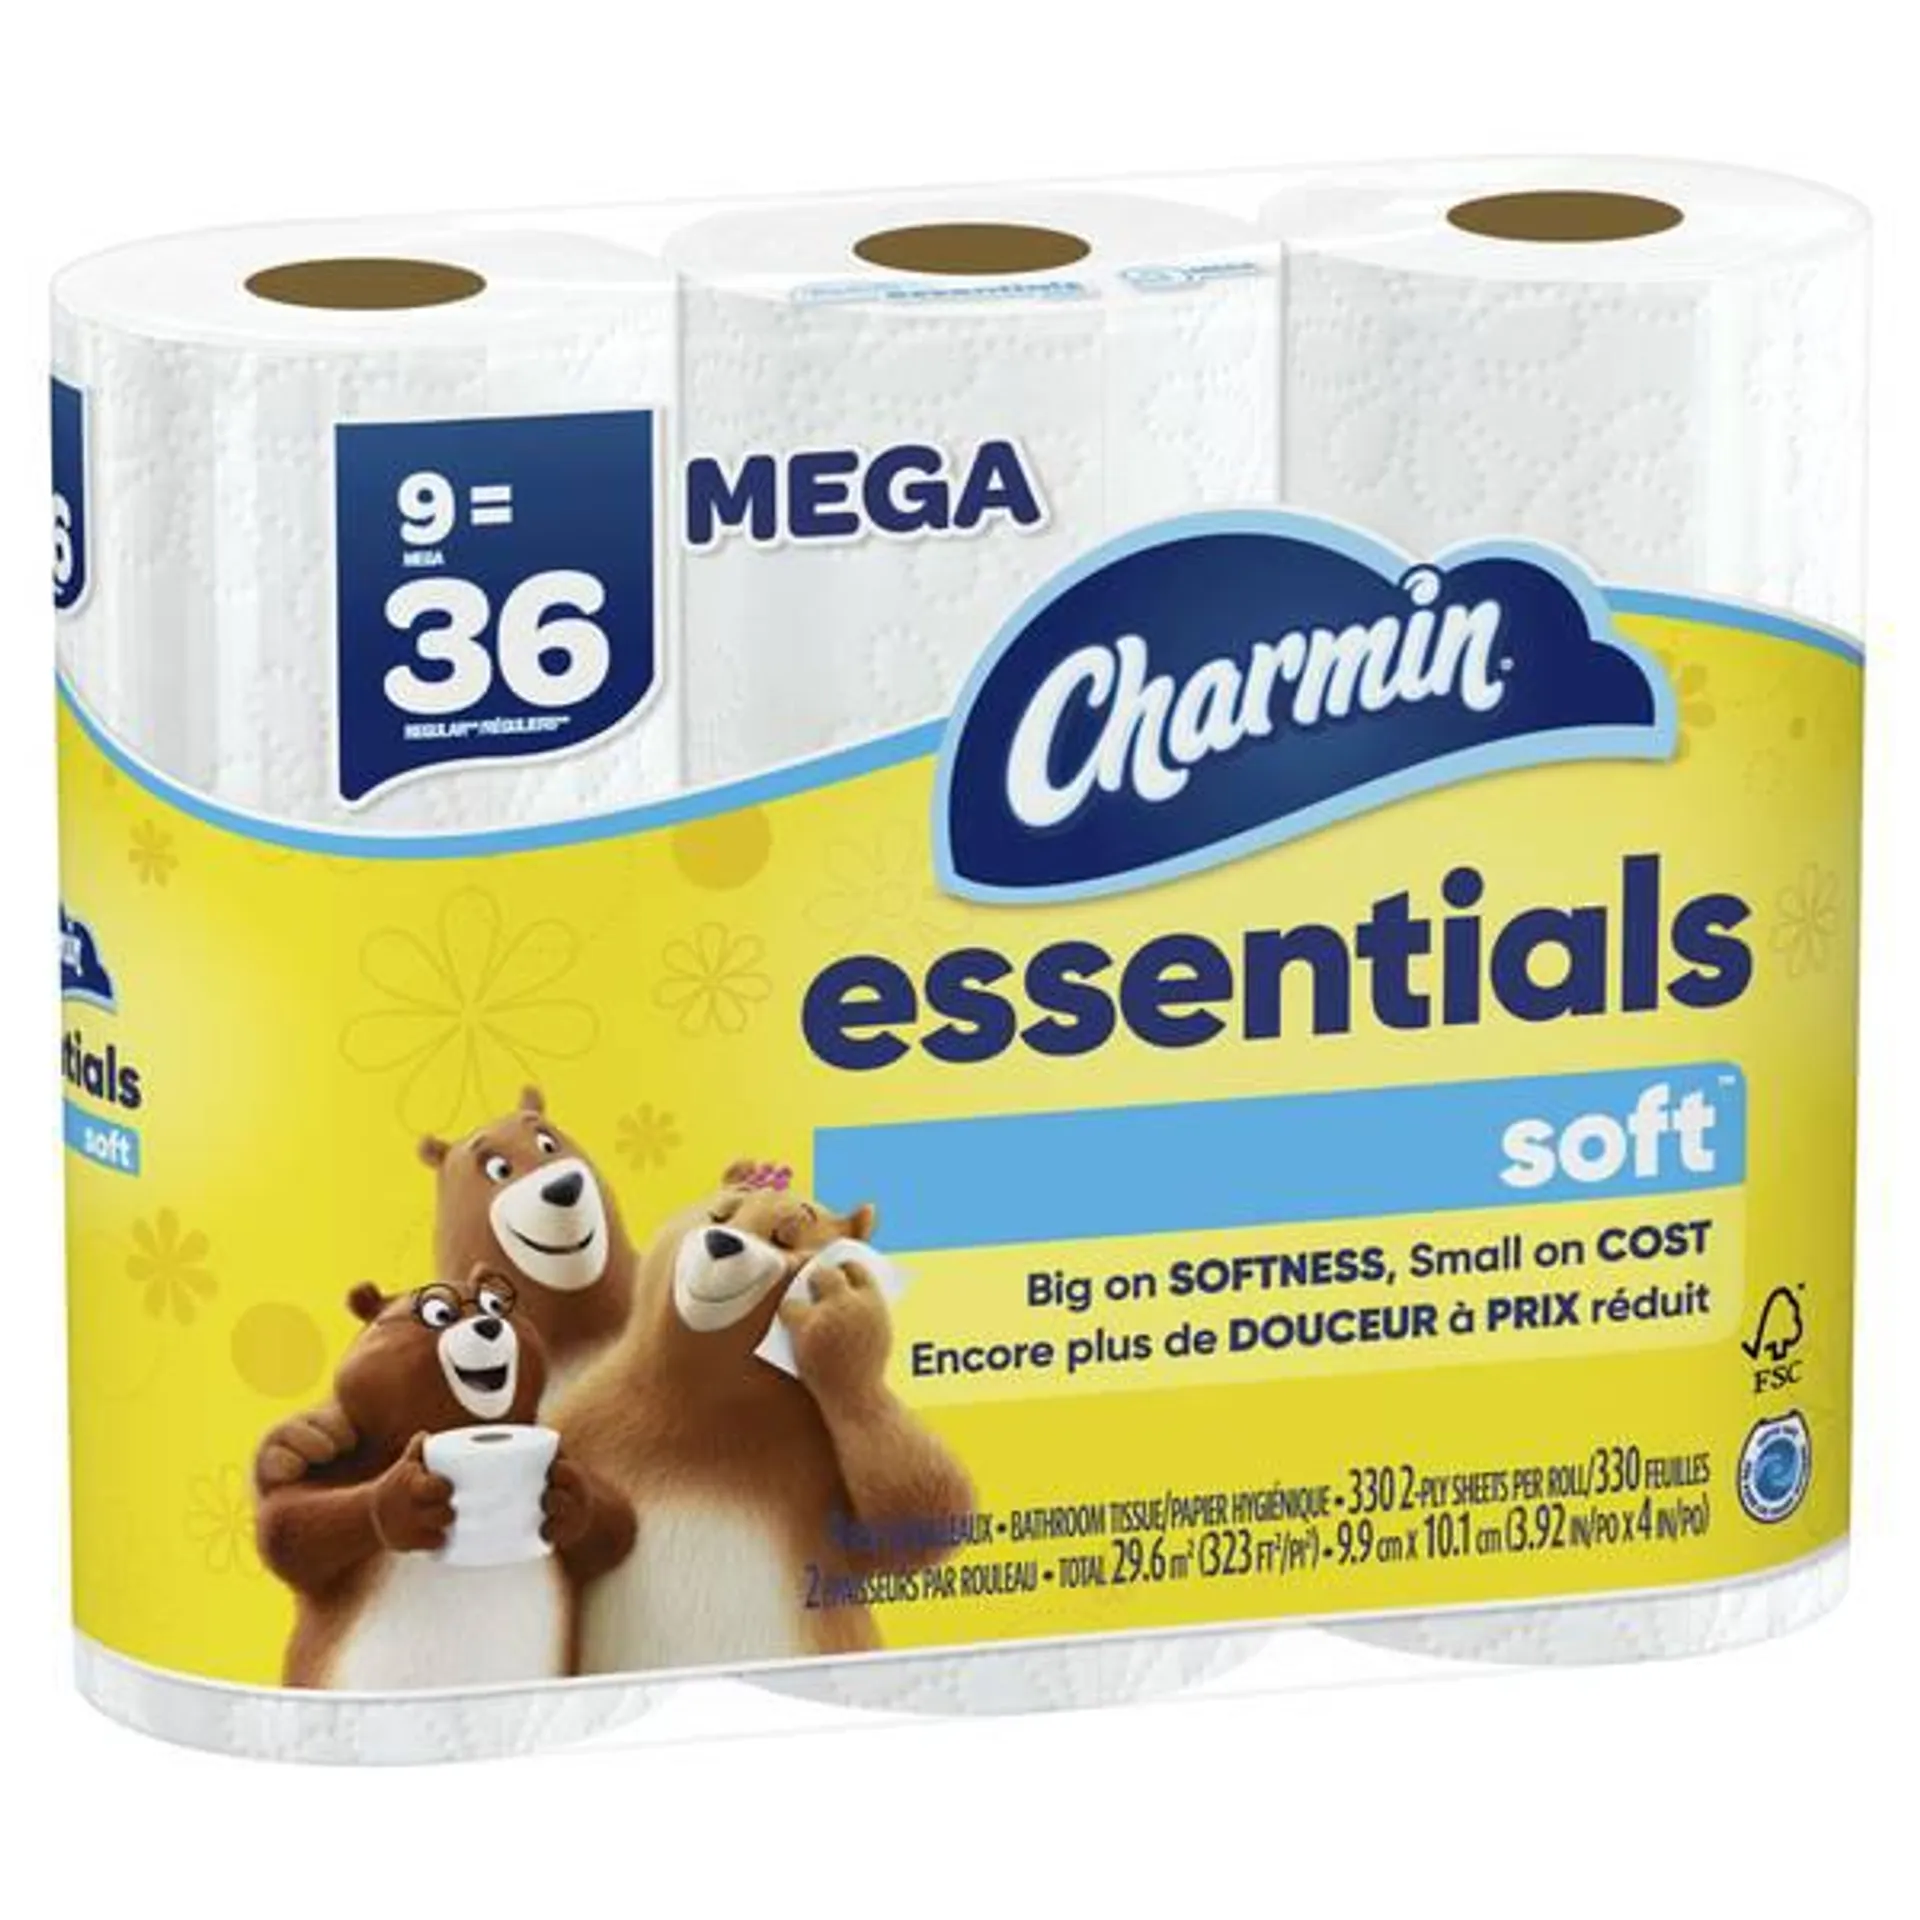 9-Pack Essentials Soft Mega Roll Toilet Paper